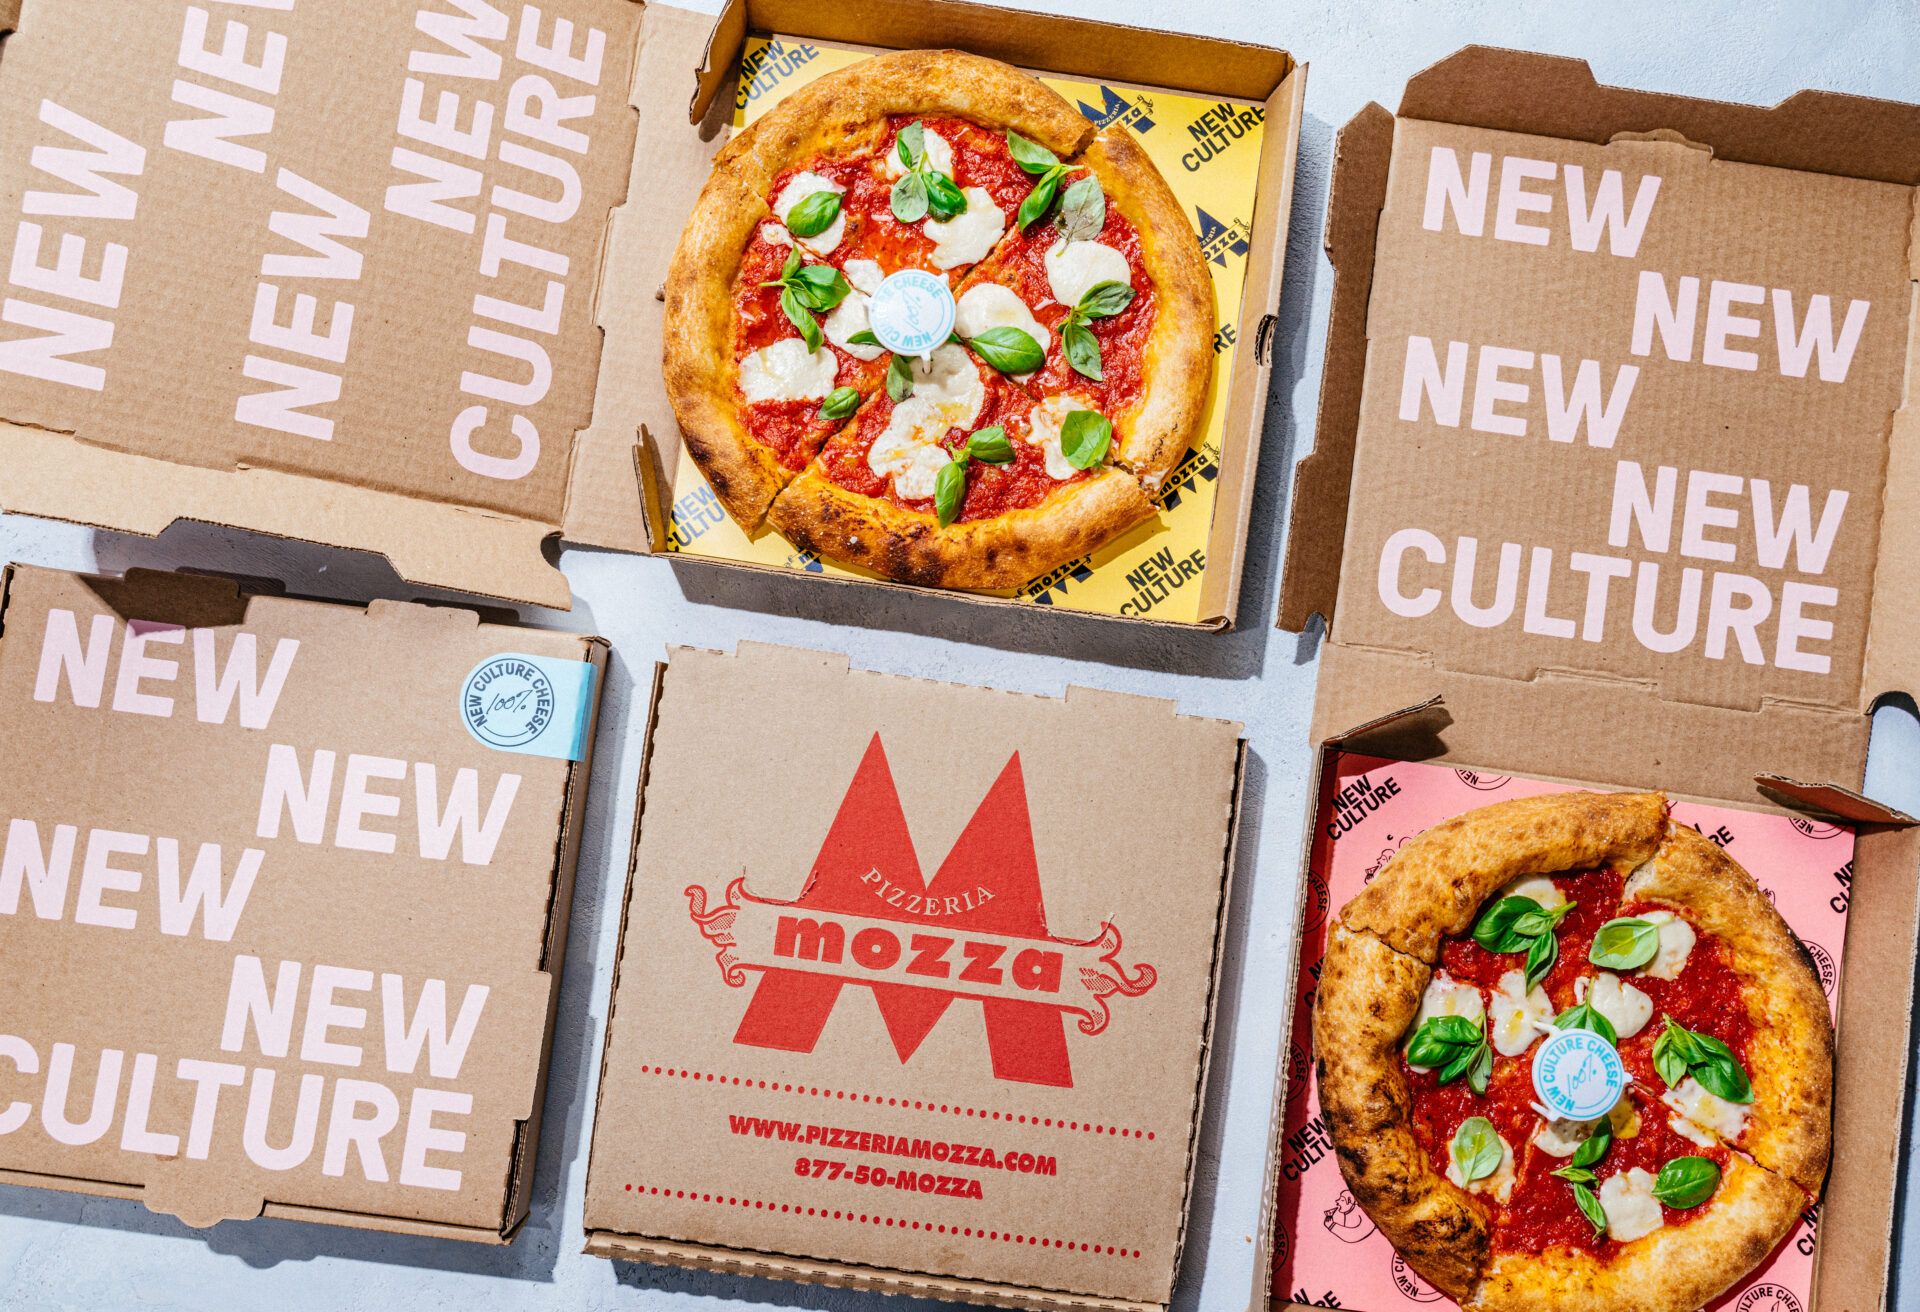 New Culture pizza with animal-free mozzarella